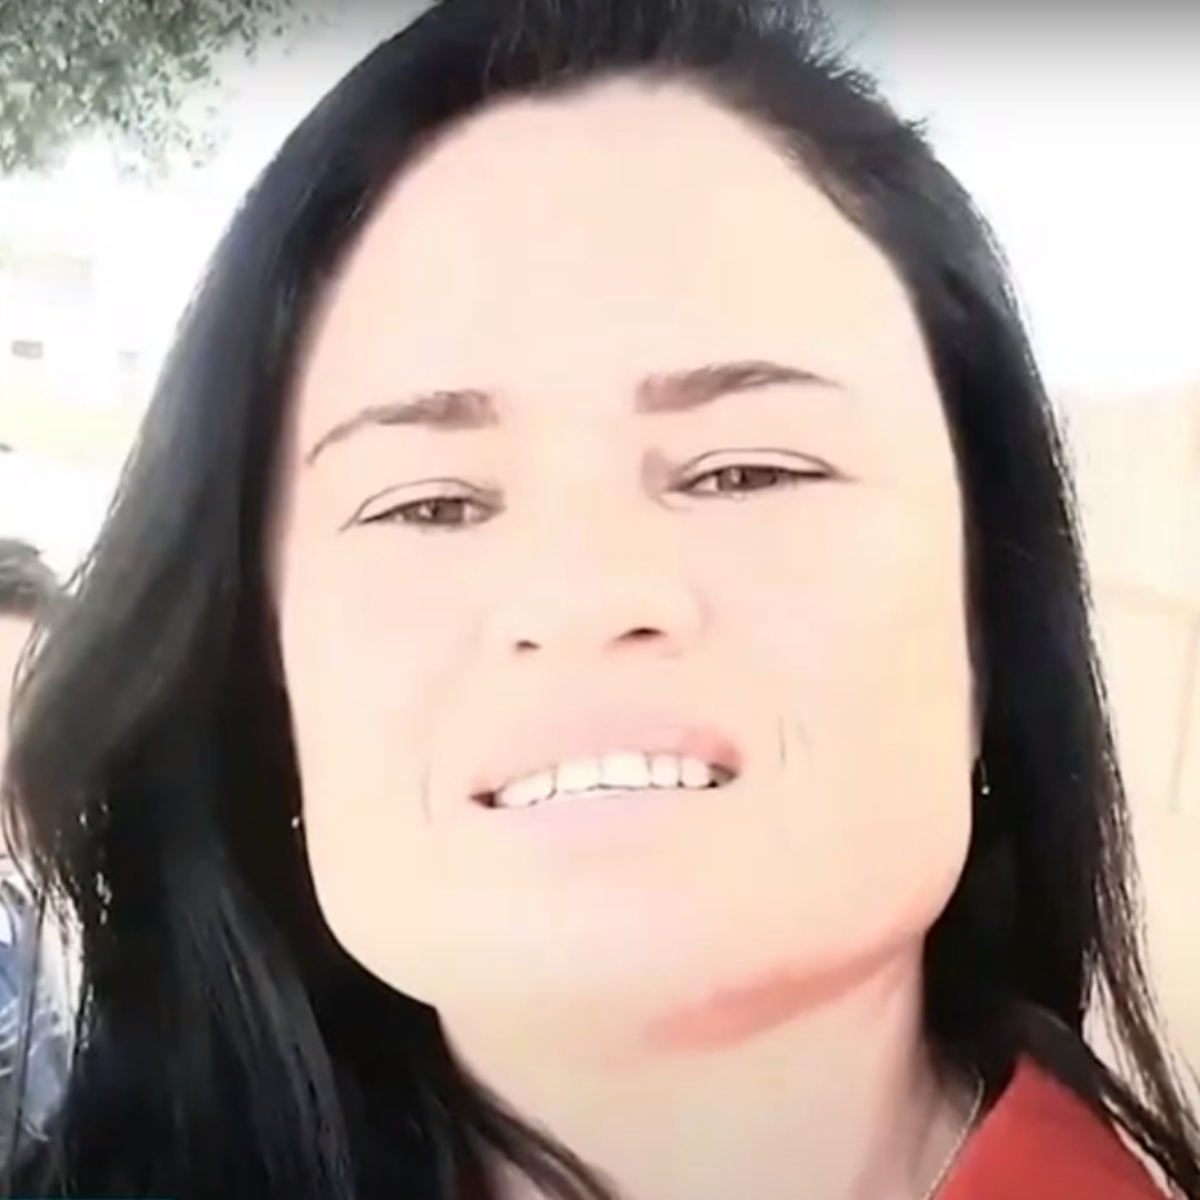  Janete Gonçalves Padilha, de 46 anos, e Leomar de Paulo Amarante desaparecidos - carro rio Iguaçu 